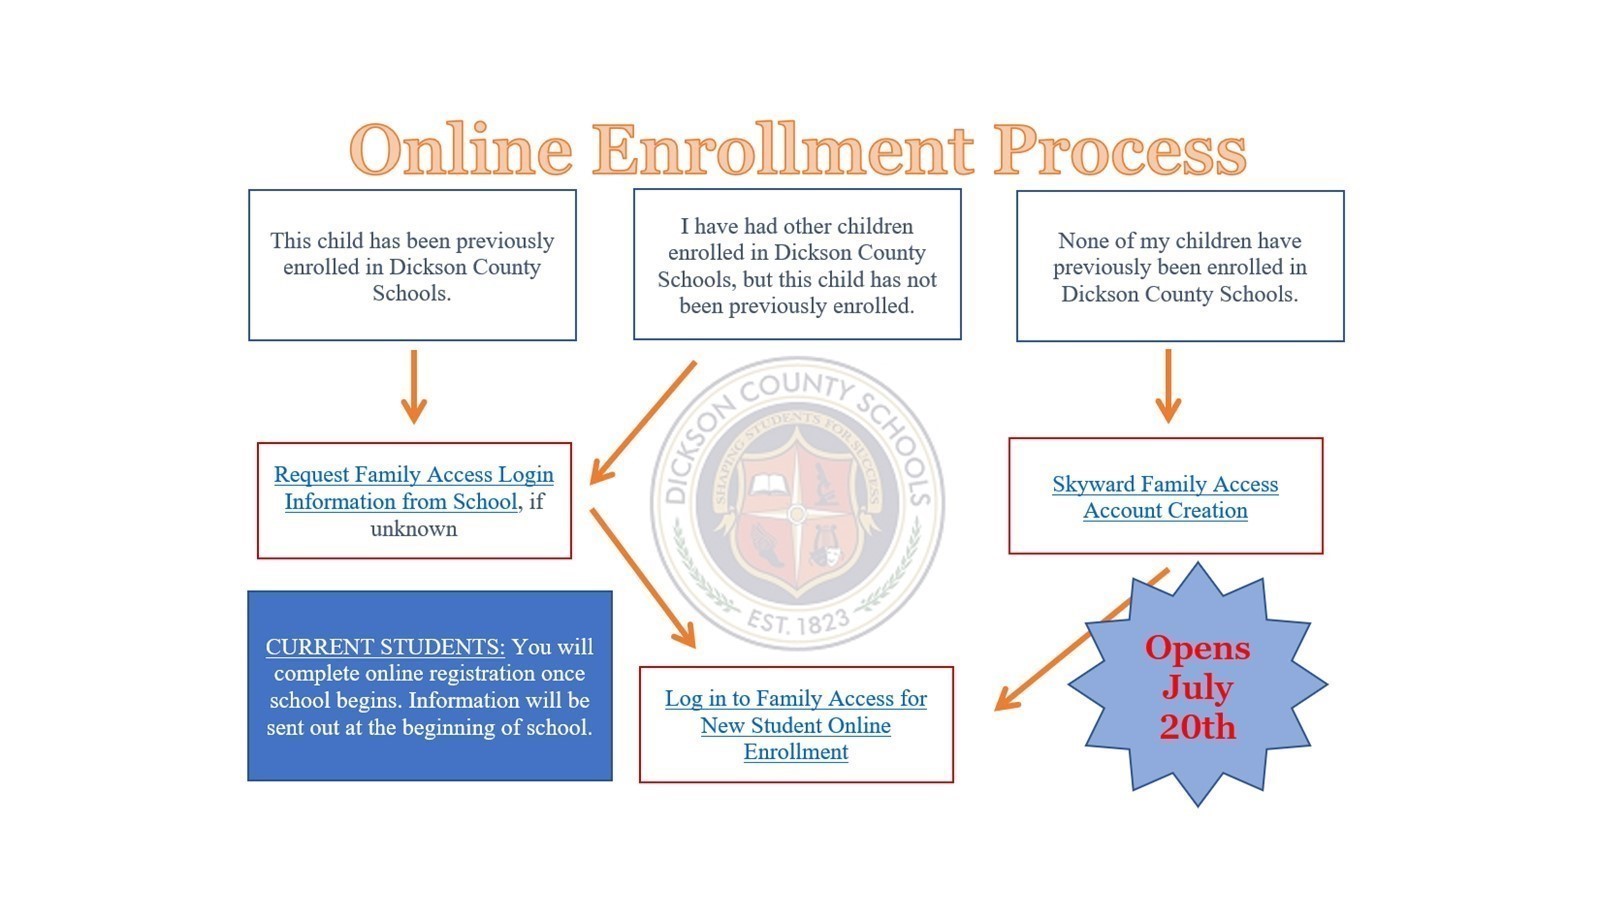 Online Enrollment